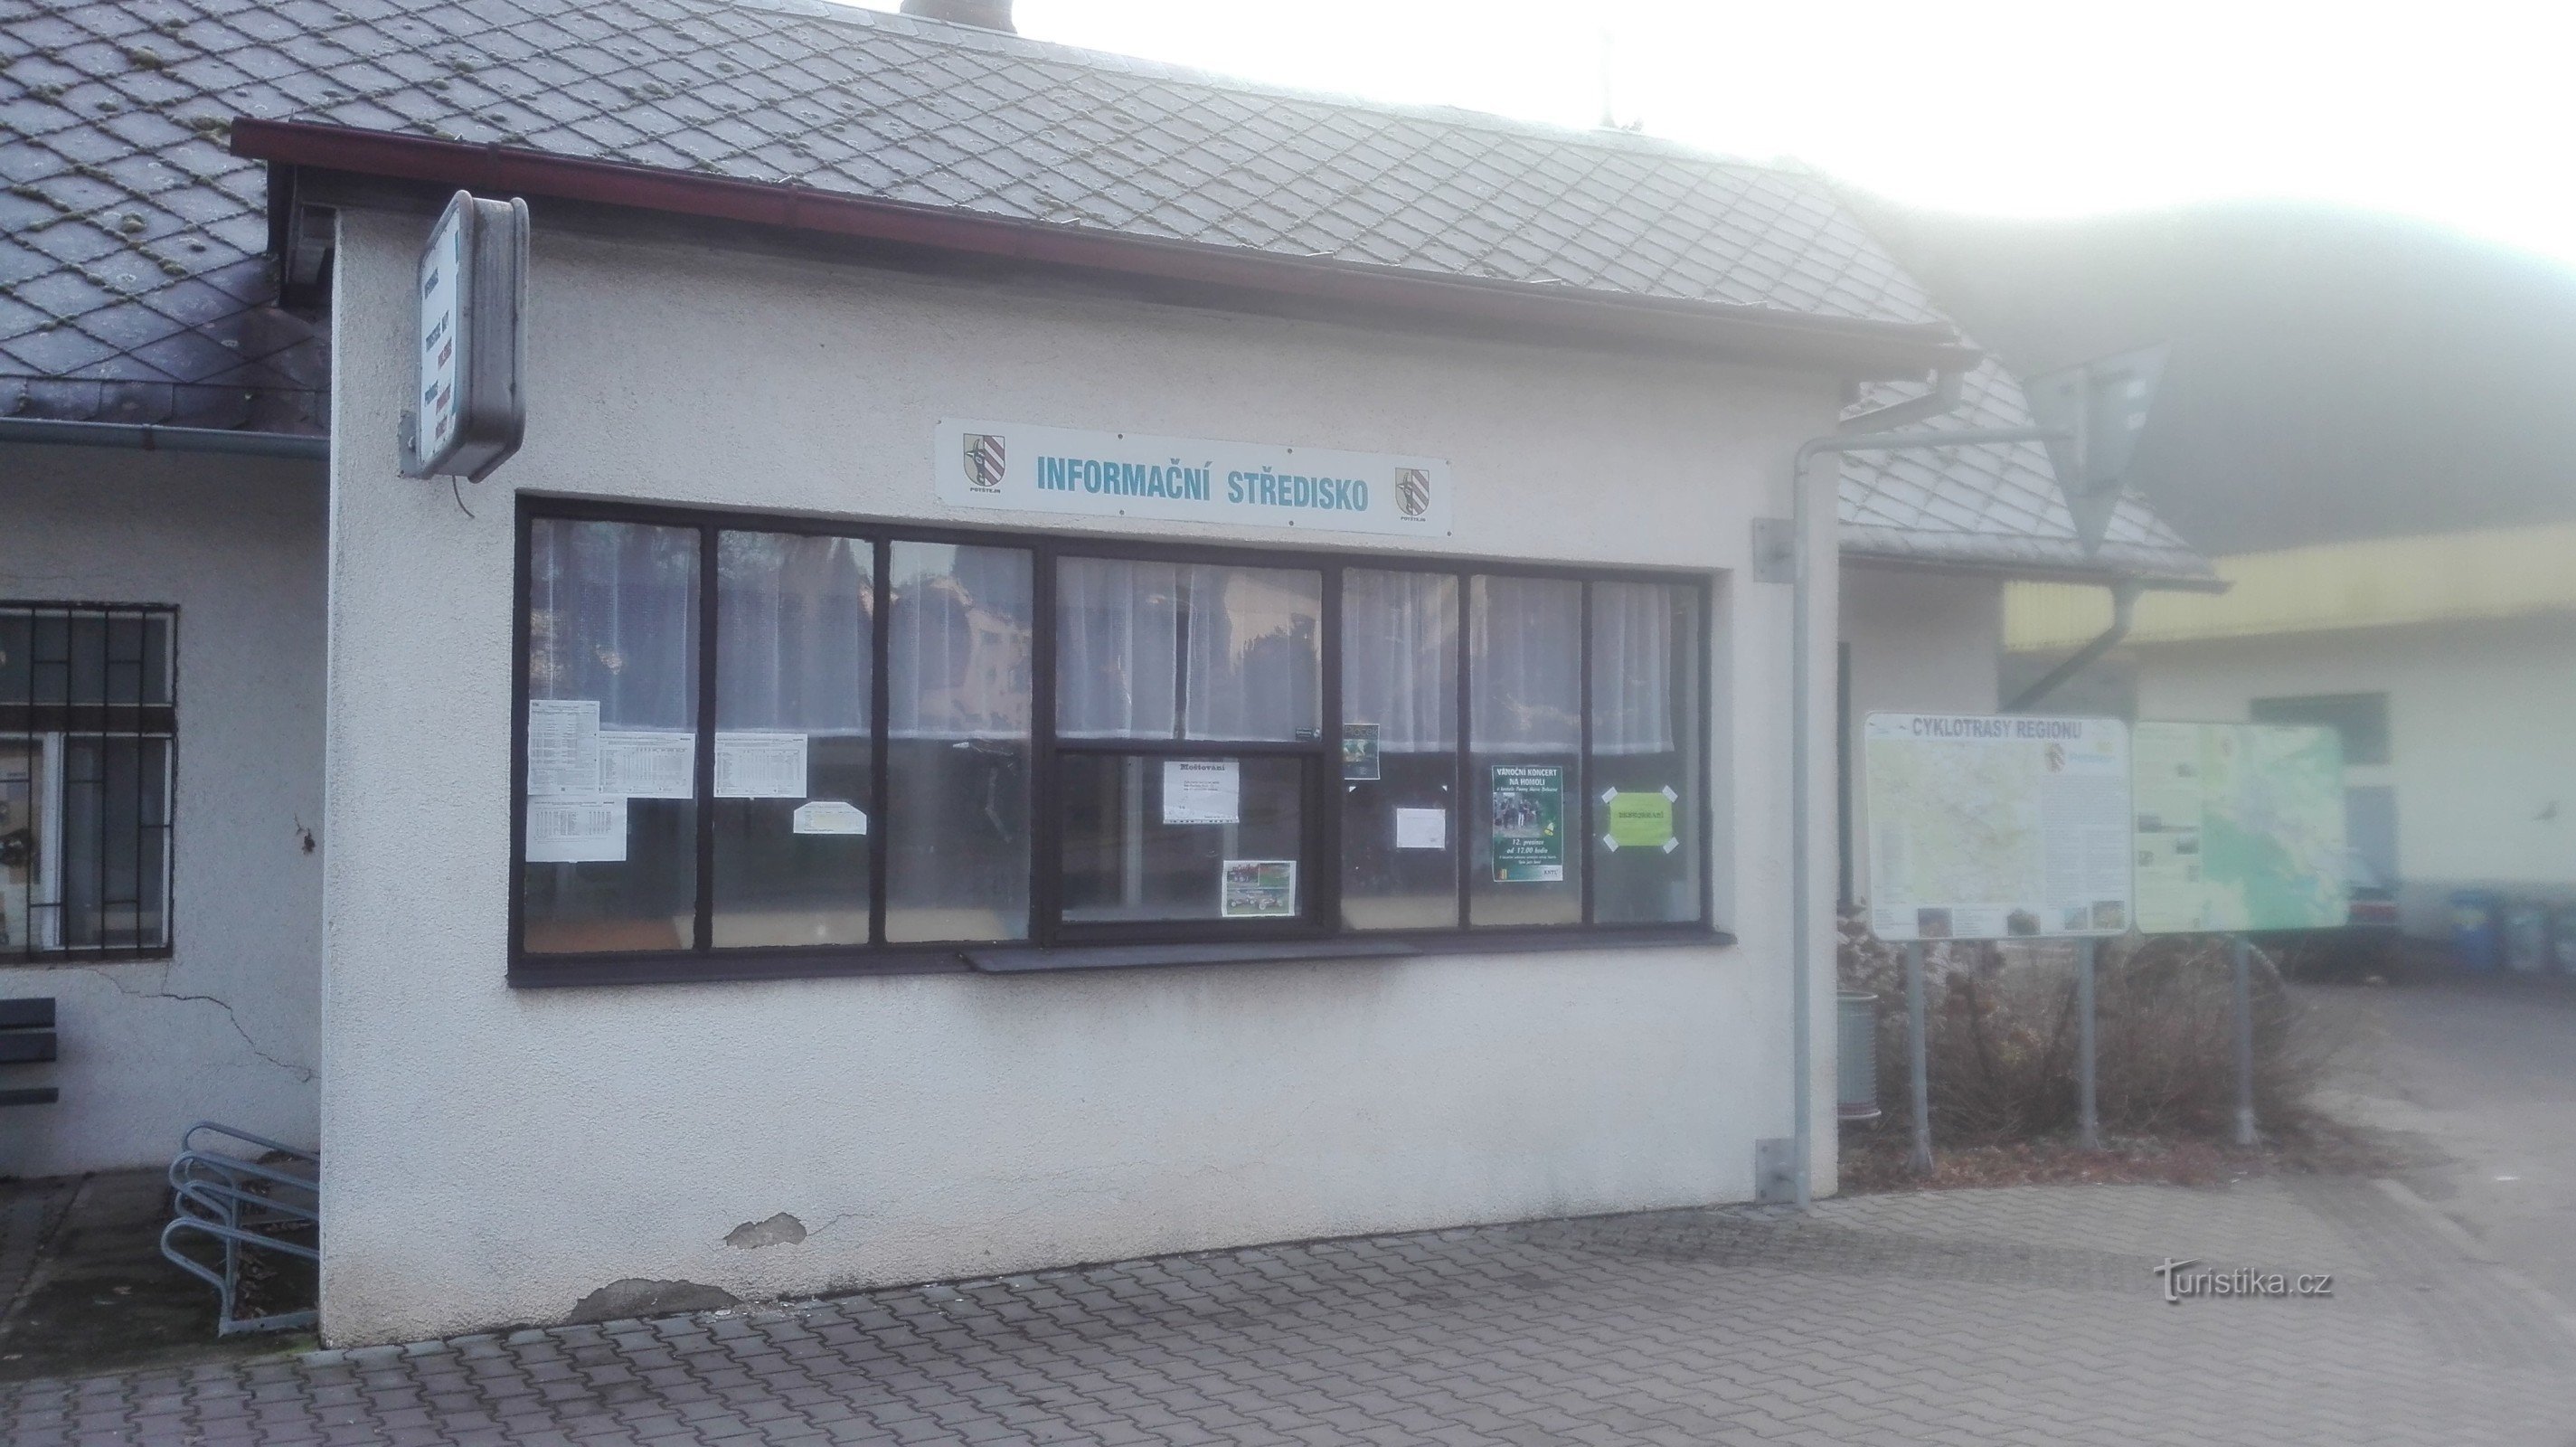 Potštejn - κέντρο πληροφοριών